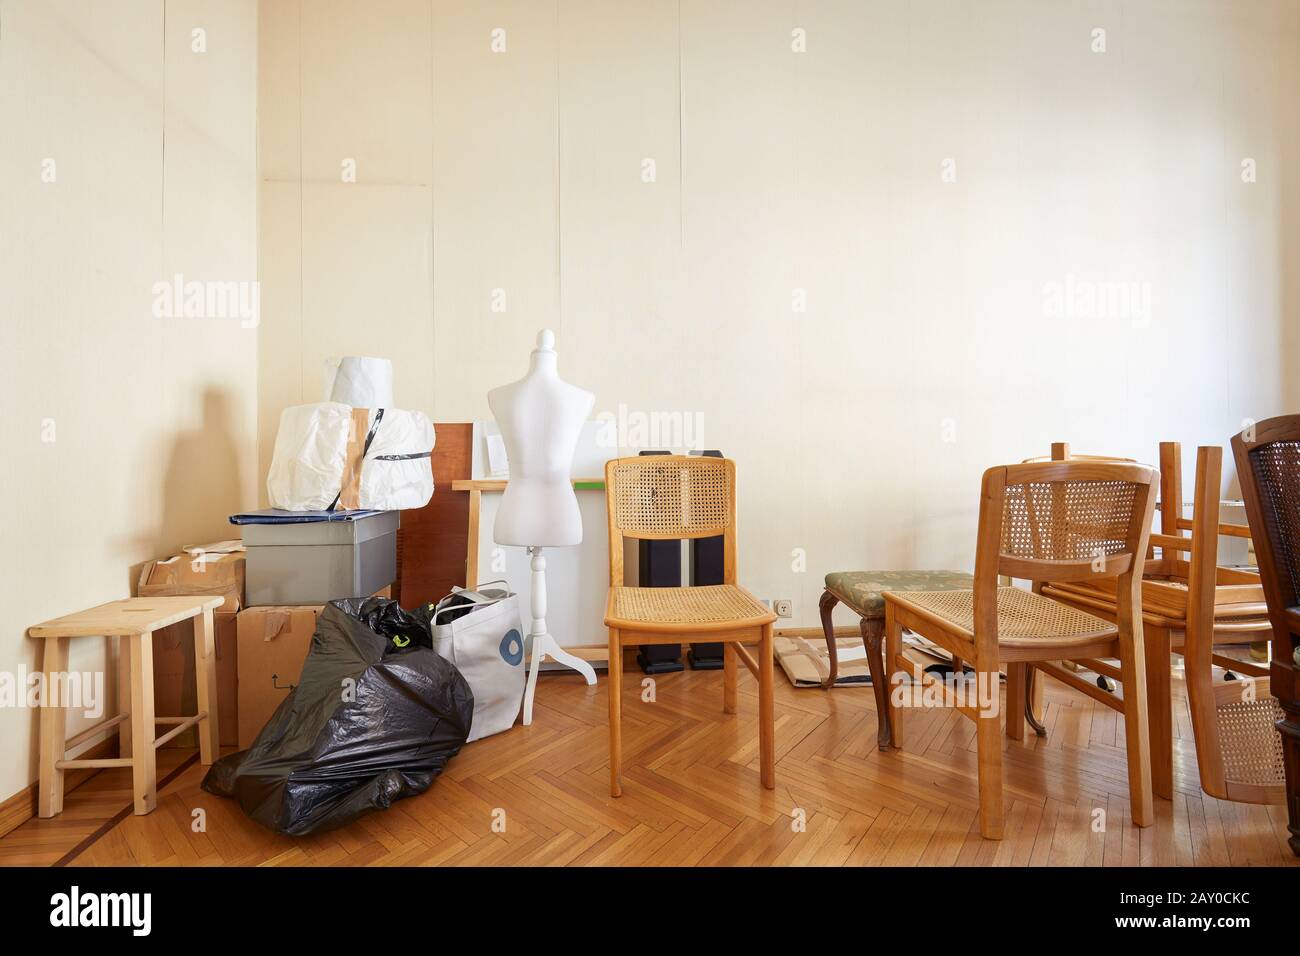 Camera con sedie, scatole e un manichino su misura prima di spostare casa Foto Stock